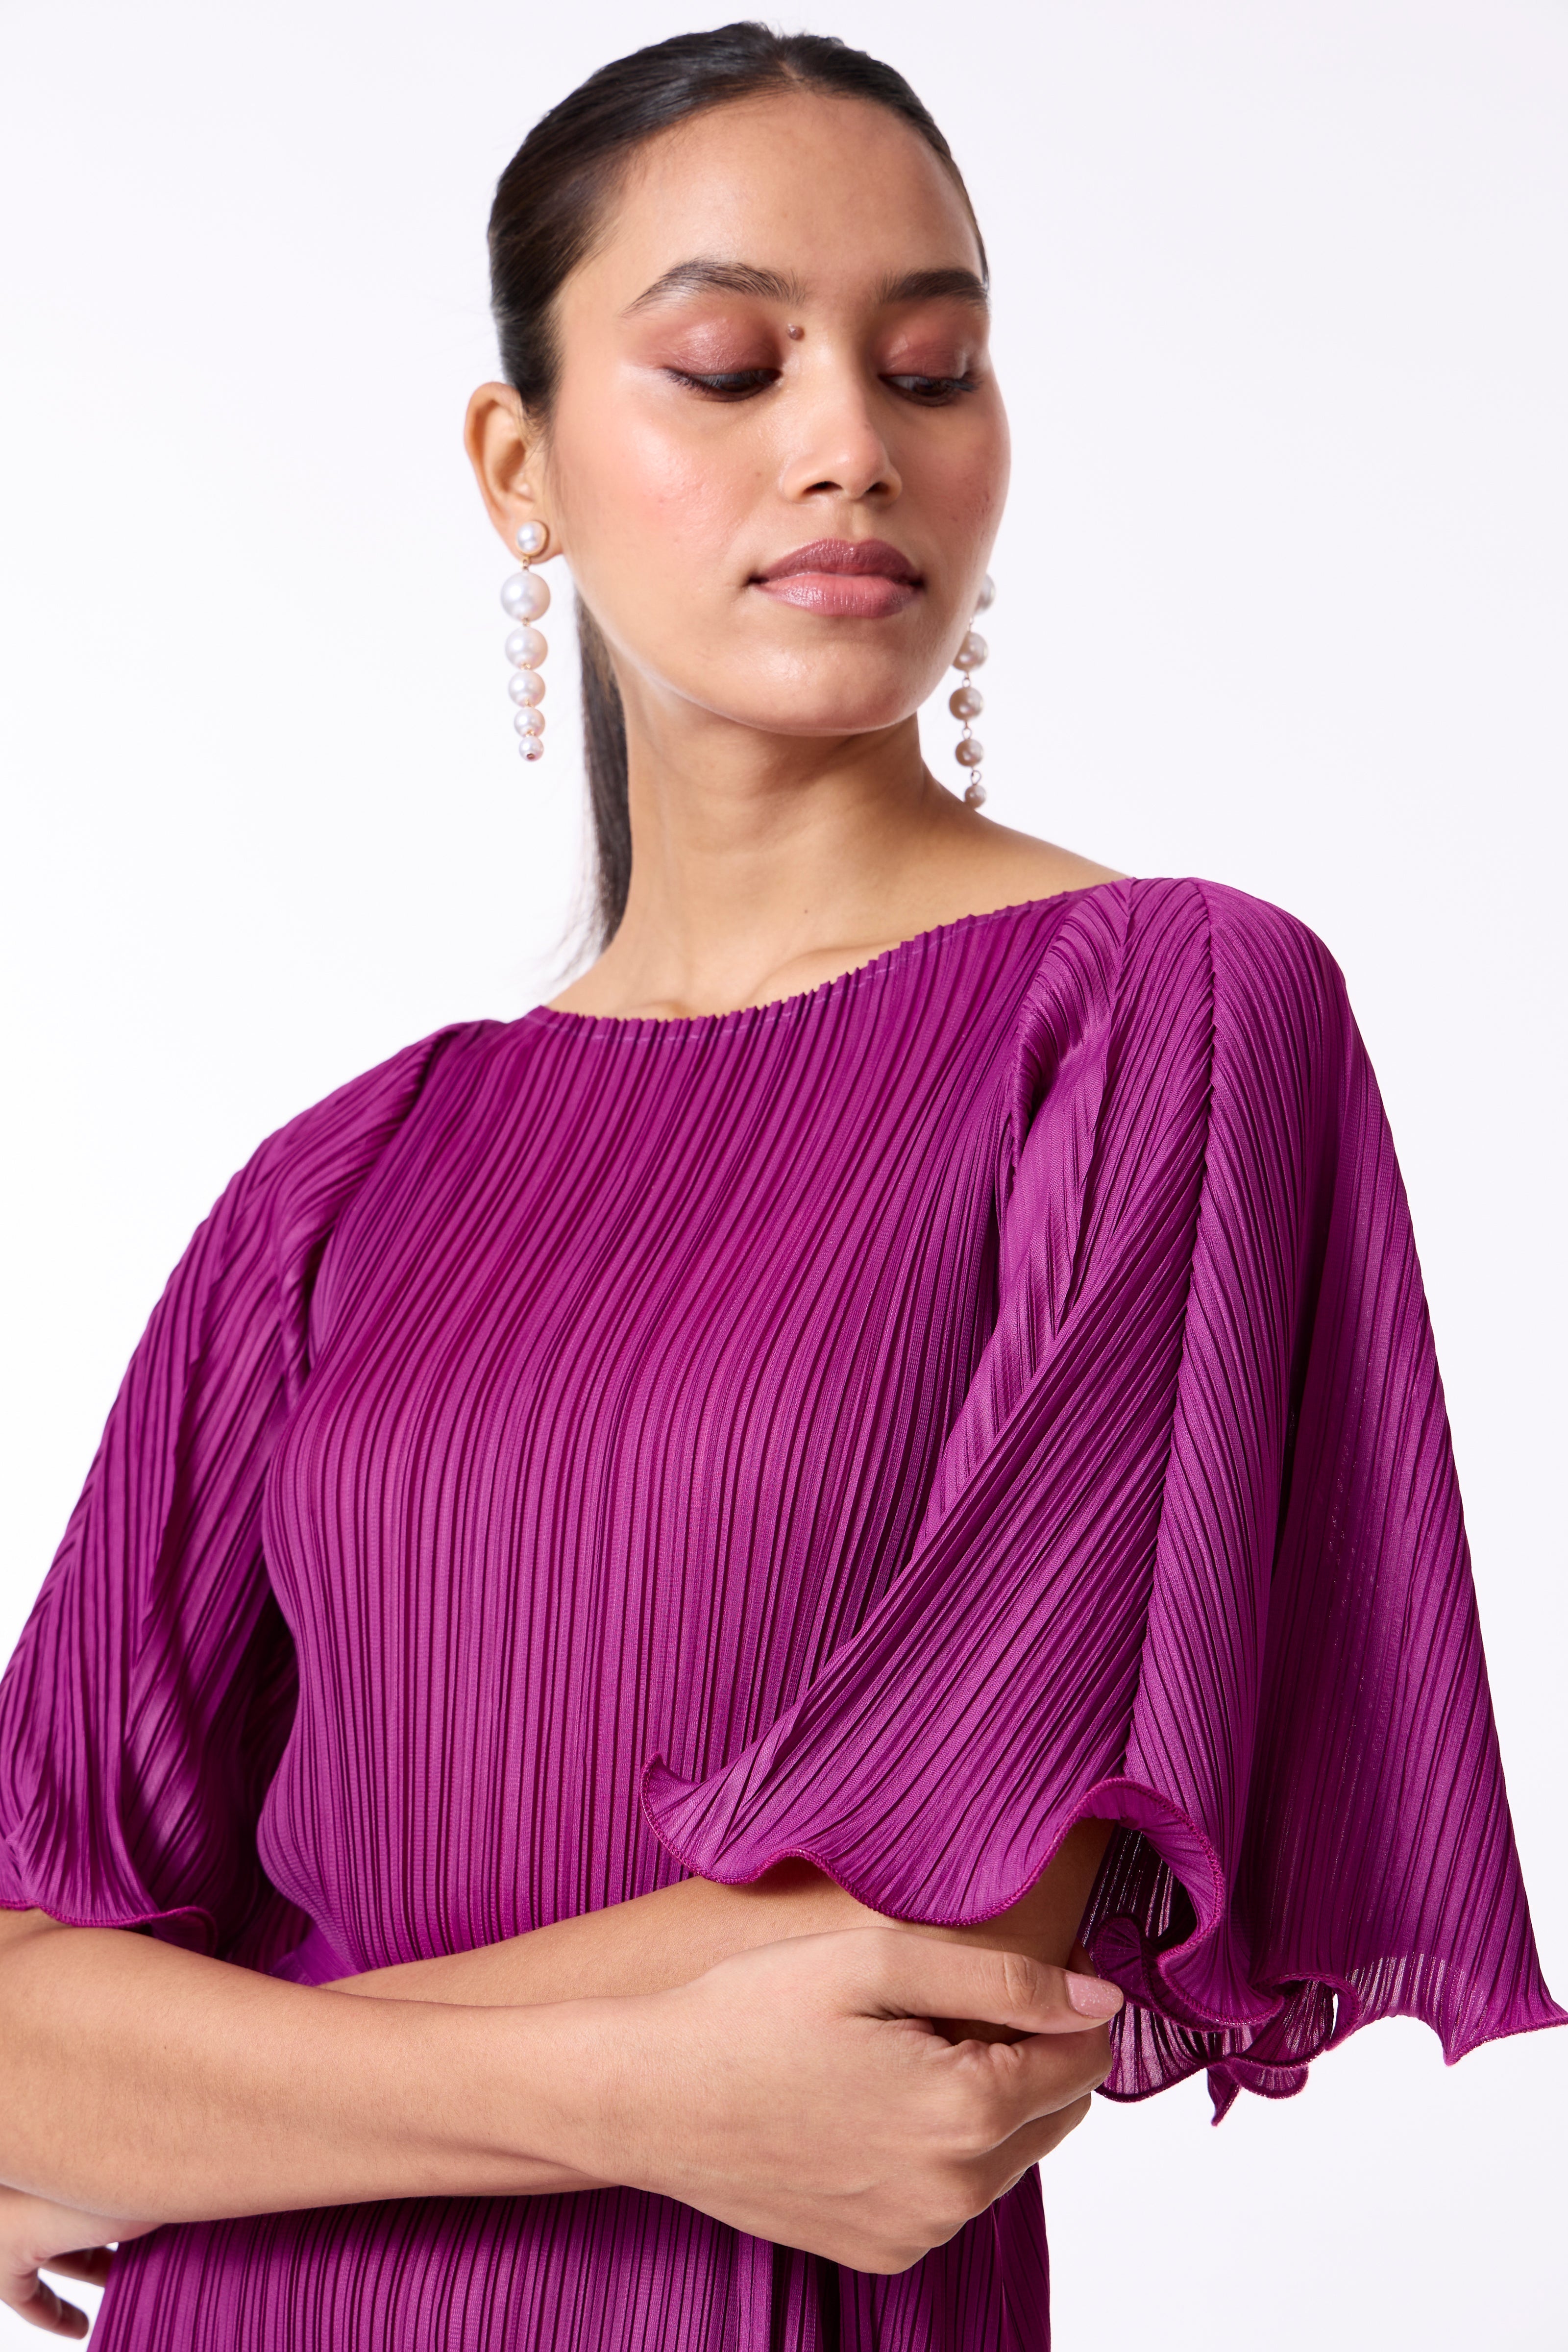 Celestine Dress - Magenta Purple